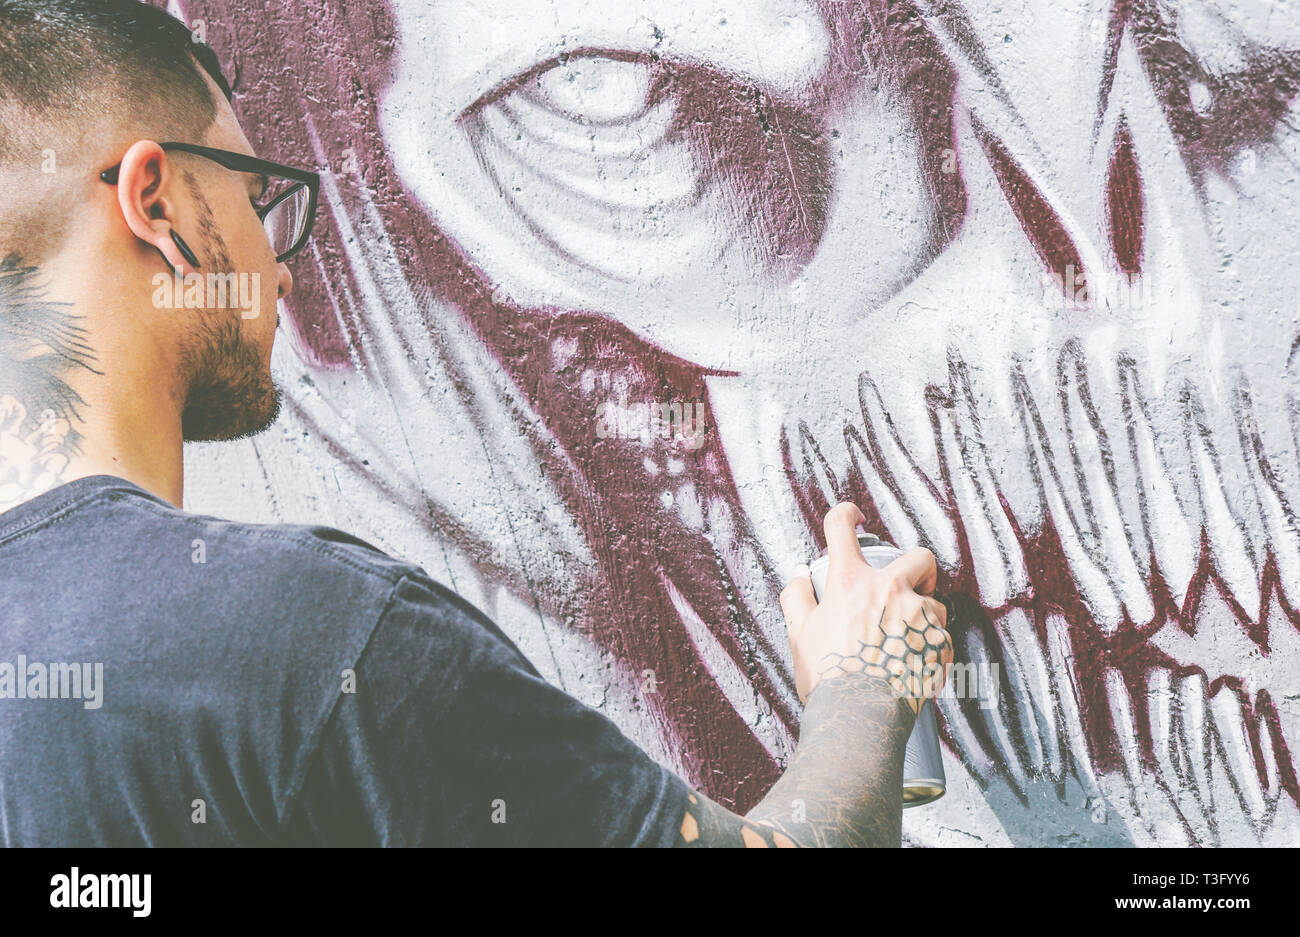 Street Graffiti Künstler Malen mit einem Color Spray einen dunklen Monster Schädel Graffiti an der Wand - Urban Lifestyle, Street Art Konzept Stockfoto